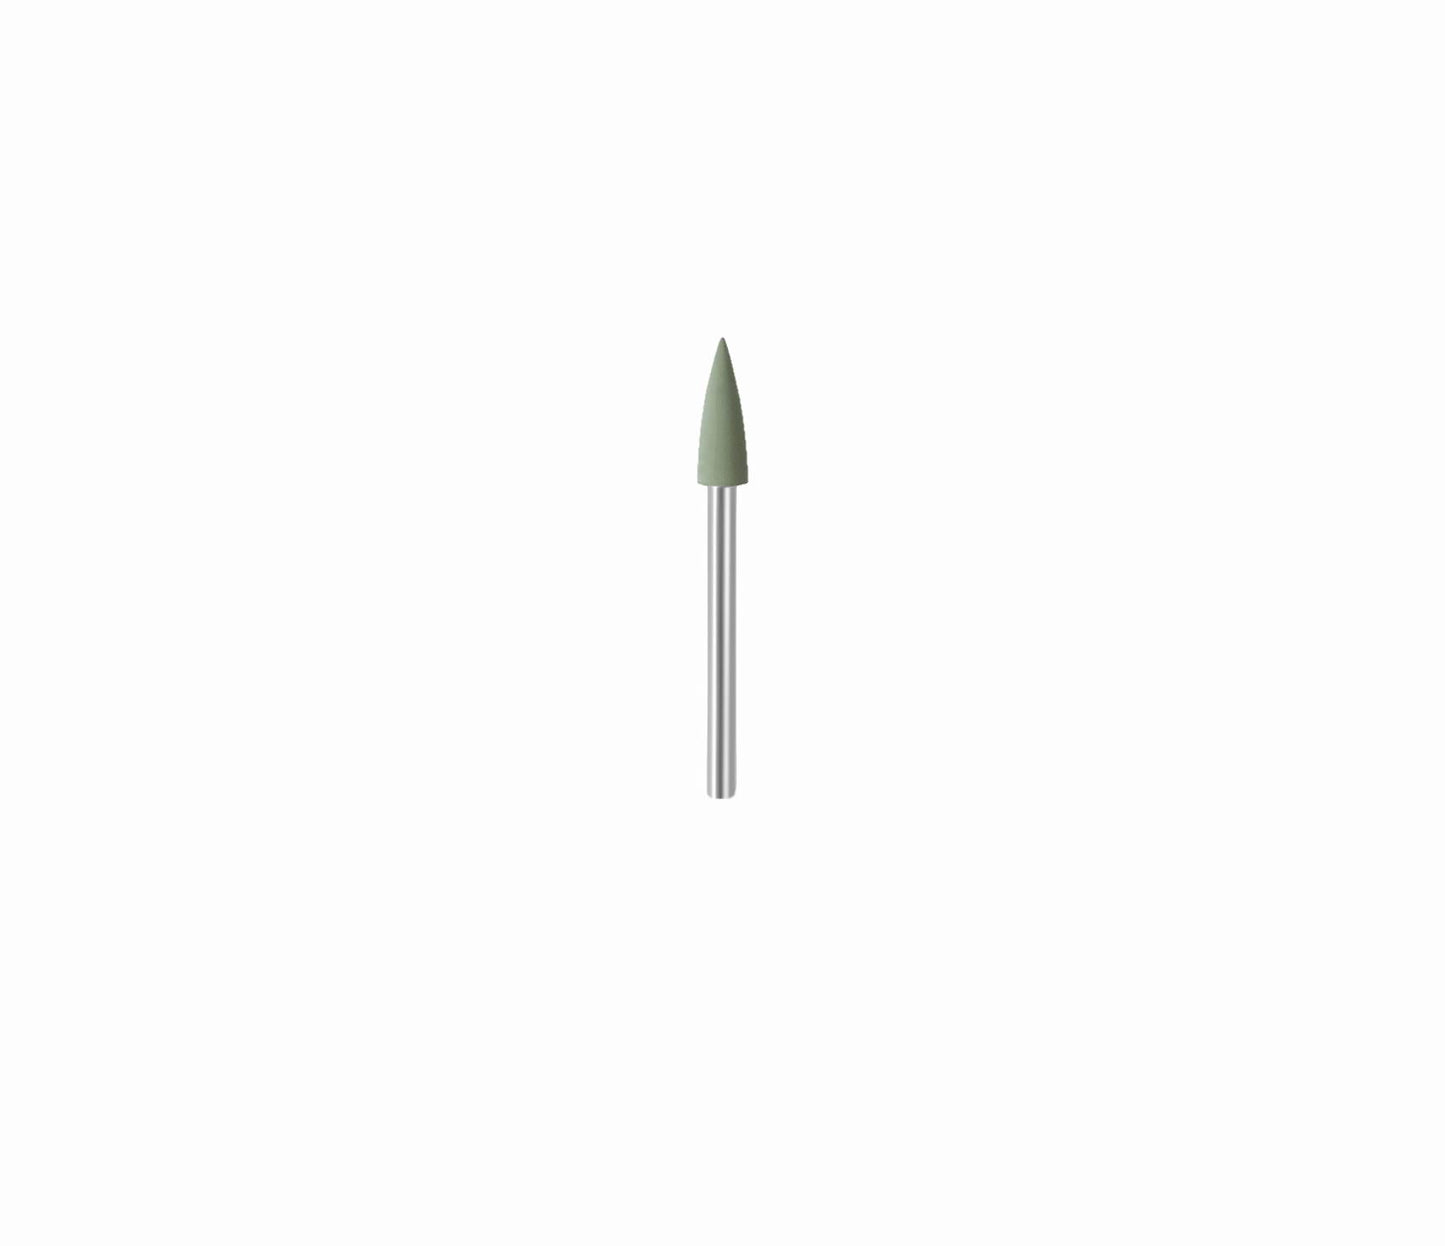 Eveflex 804 Rubber Abrasive Burr, 4.3 × 12 (mm) - Green, Extra-Fine- on a 2.34mm shank